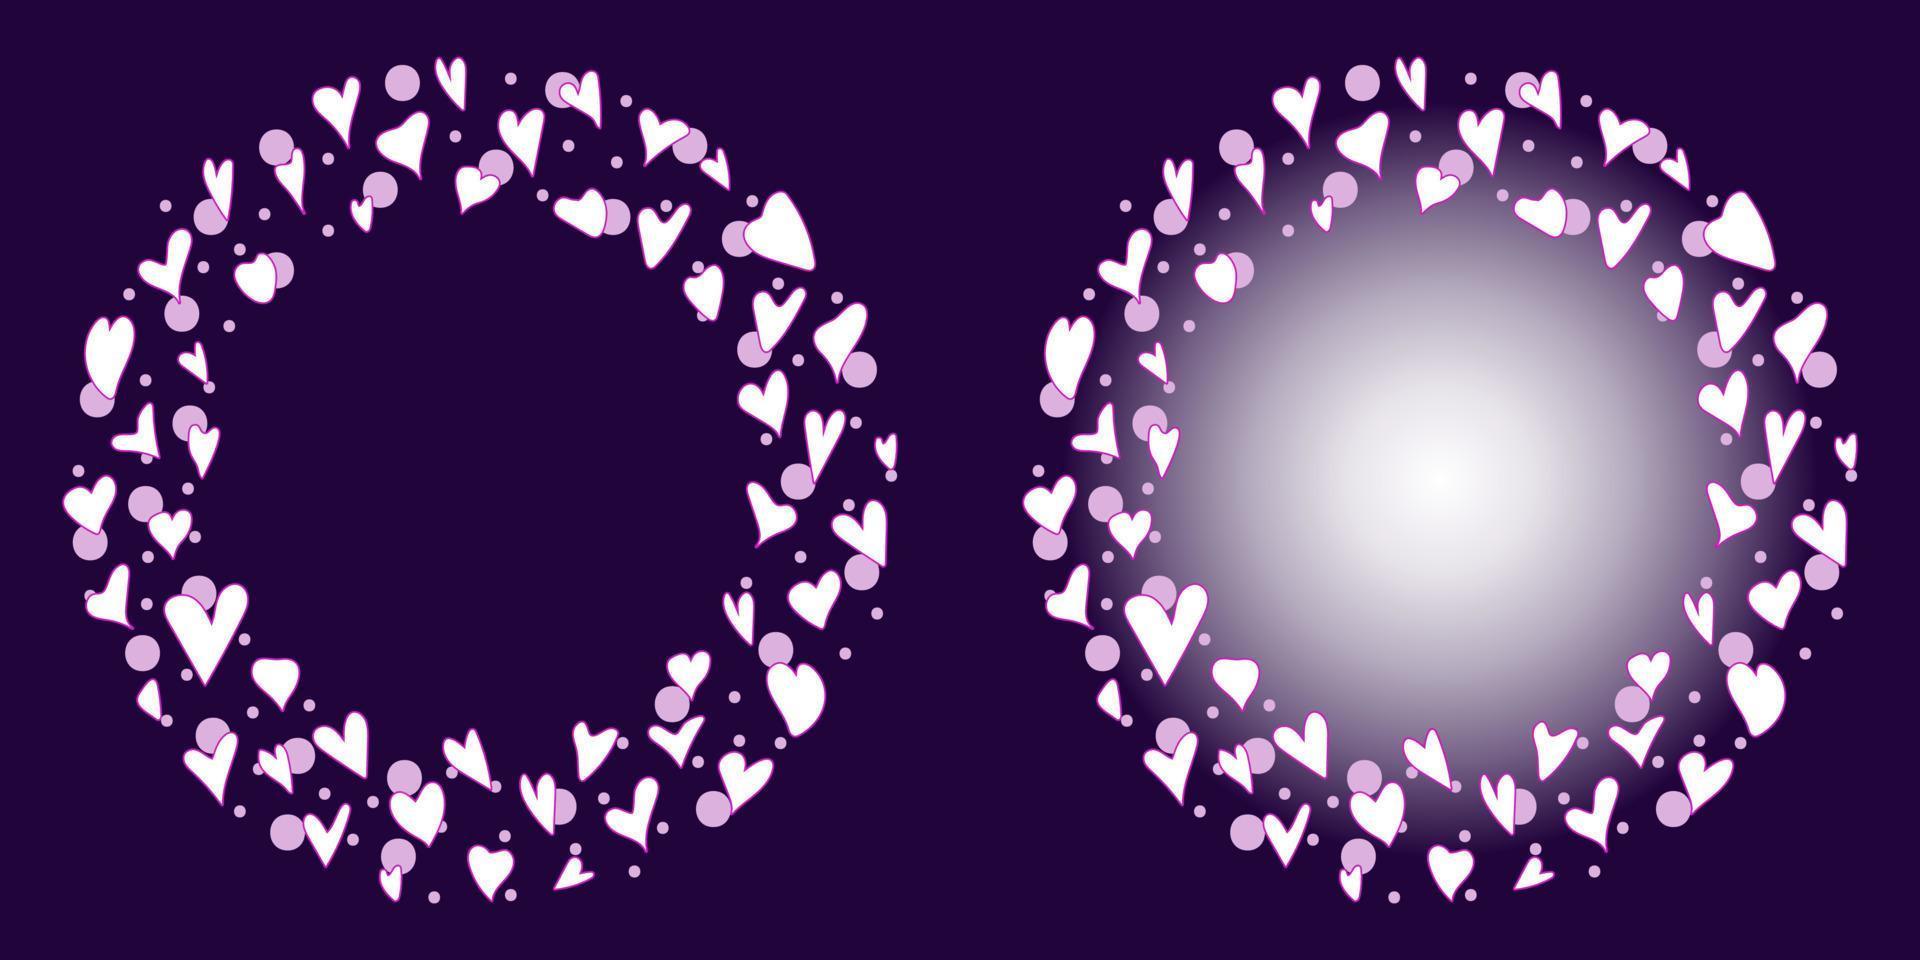 marco circular con pequeños corazones y burbujas dibujados a mano. borde circular de corazones para postales, afiches, diseño infantil, niño o niña, amor, romántico vector